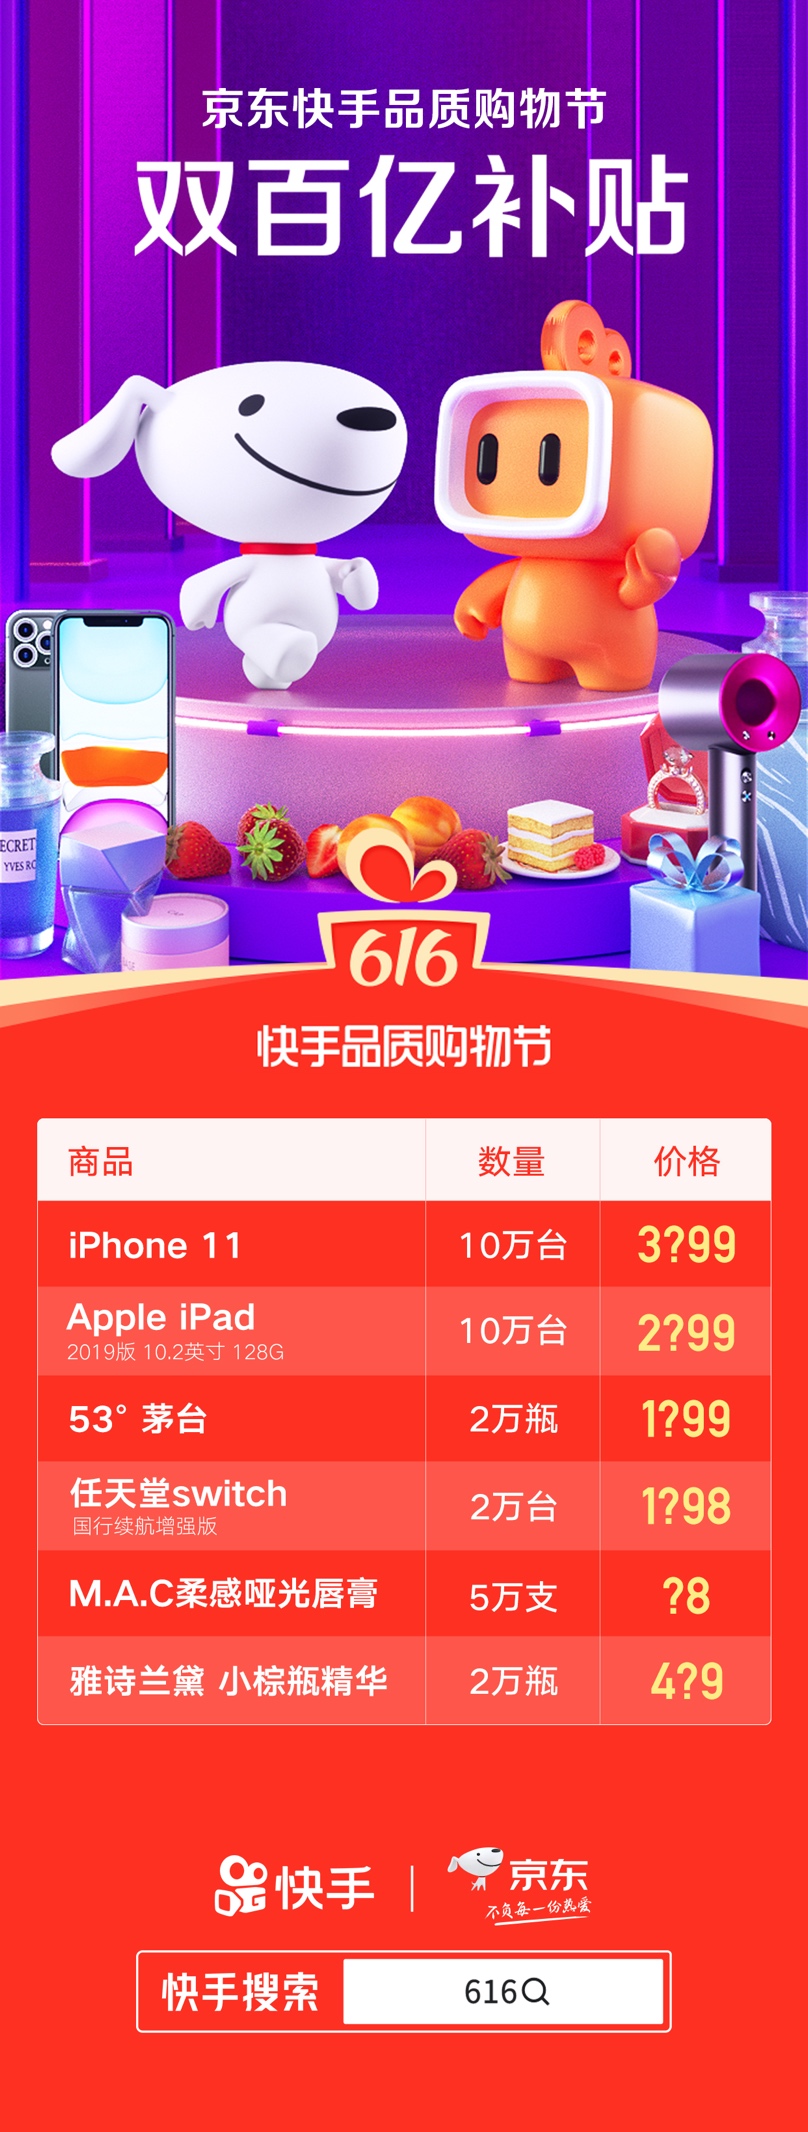 快手联合京东零售推出“双百亿补贴”，616将卖10万台双向补贴iPhone11